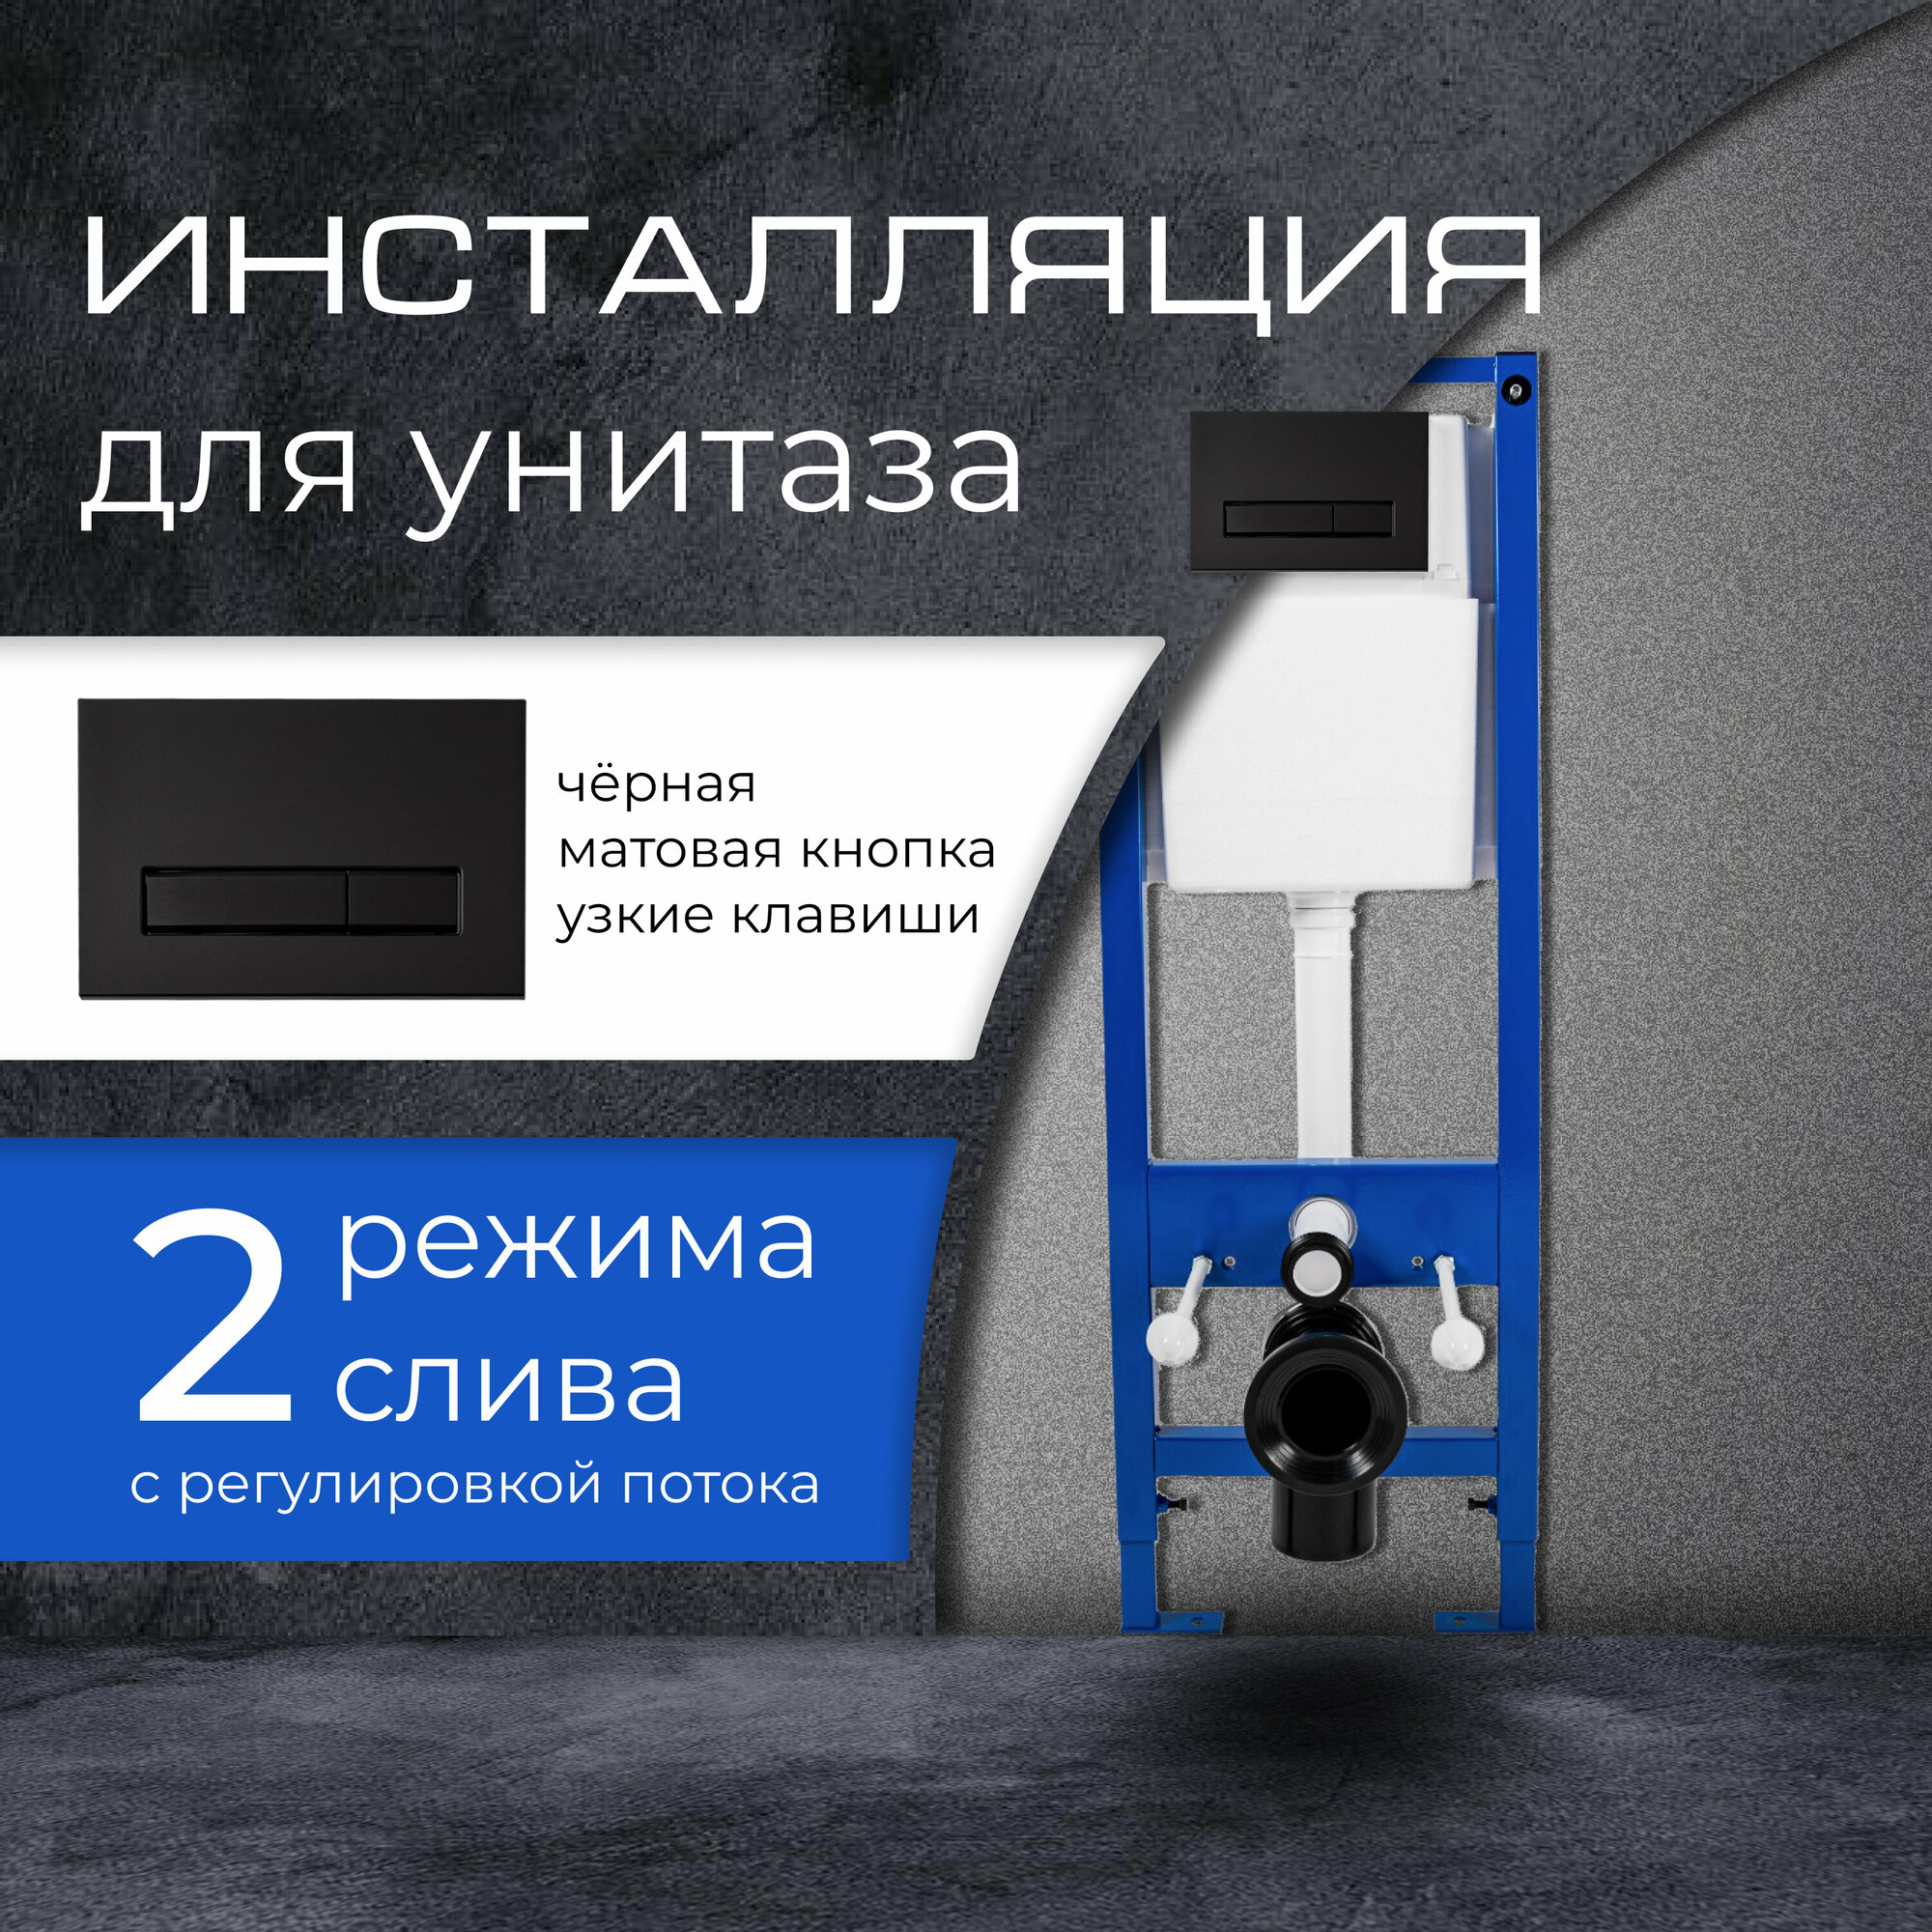 Инсталляция для подвесного унитаза с черной кнопкой узкие клавиши матовое покрытие Soft touch "Уклад" Модель 2023 г. (полный комплект для установки)